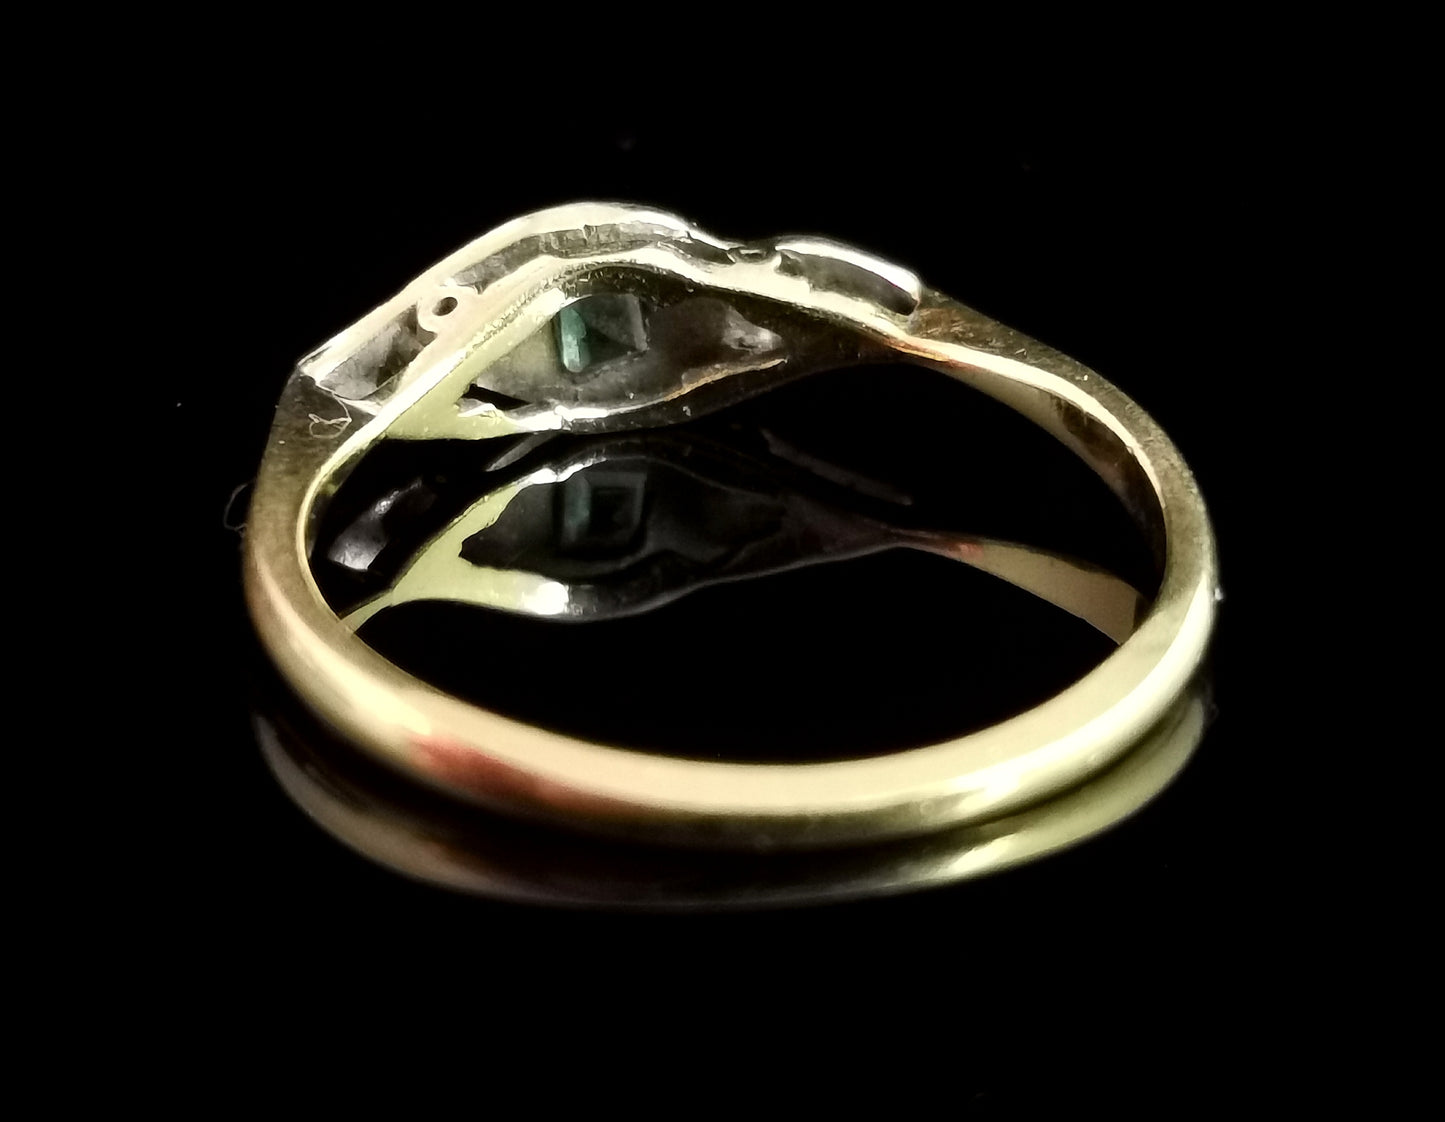 Art Deco emerald ring, 18ct gold and platinum